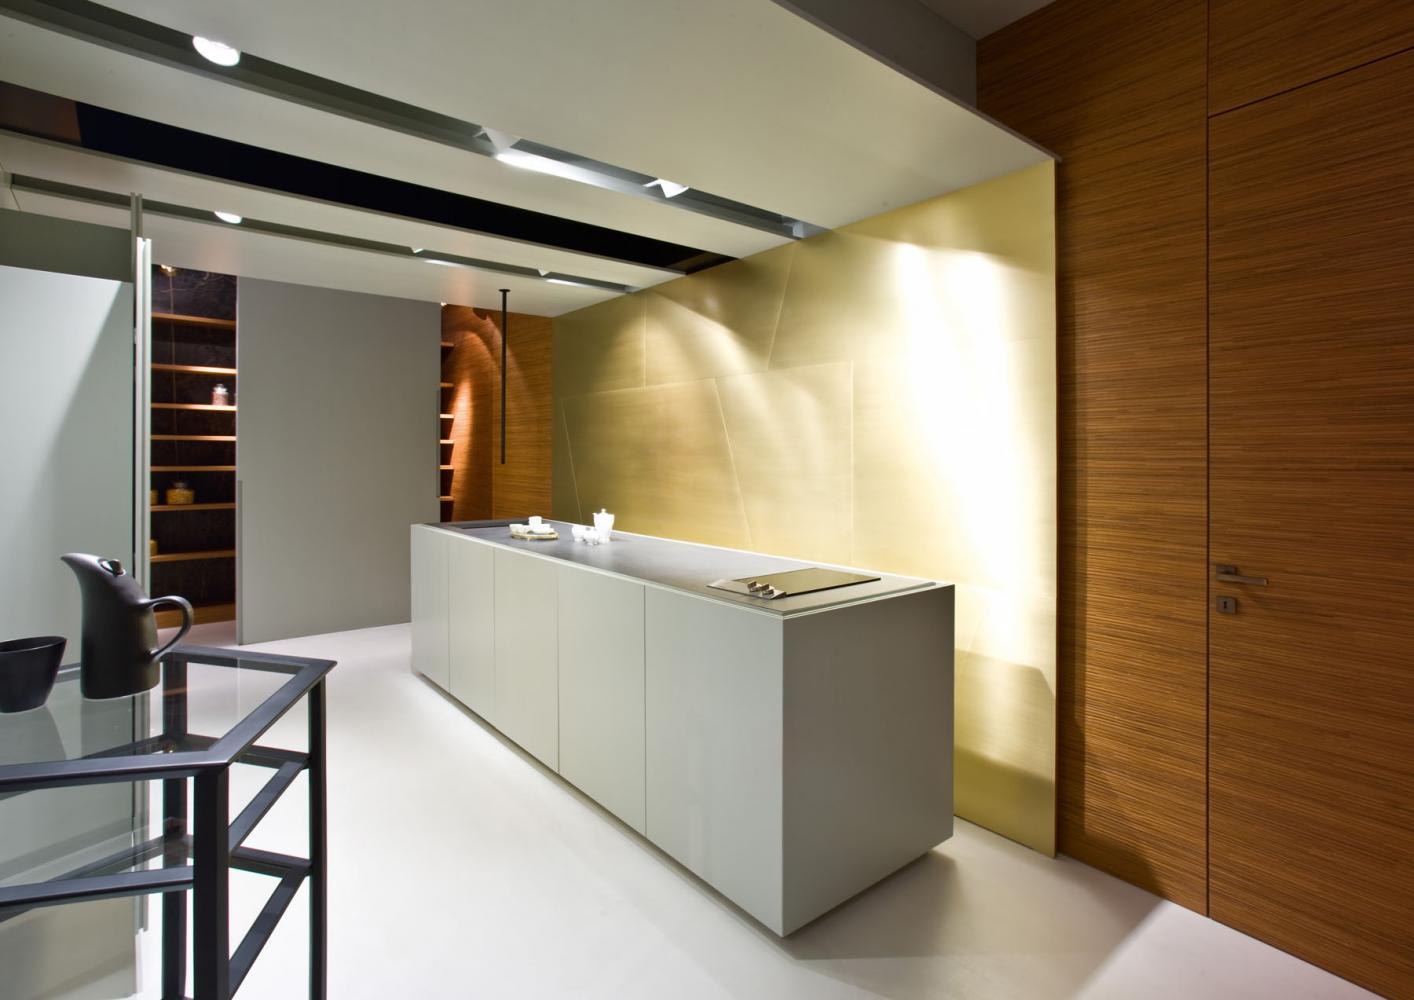 Bespoke luxury modern kitchen